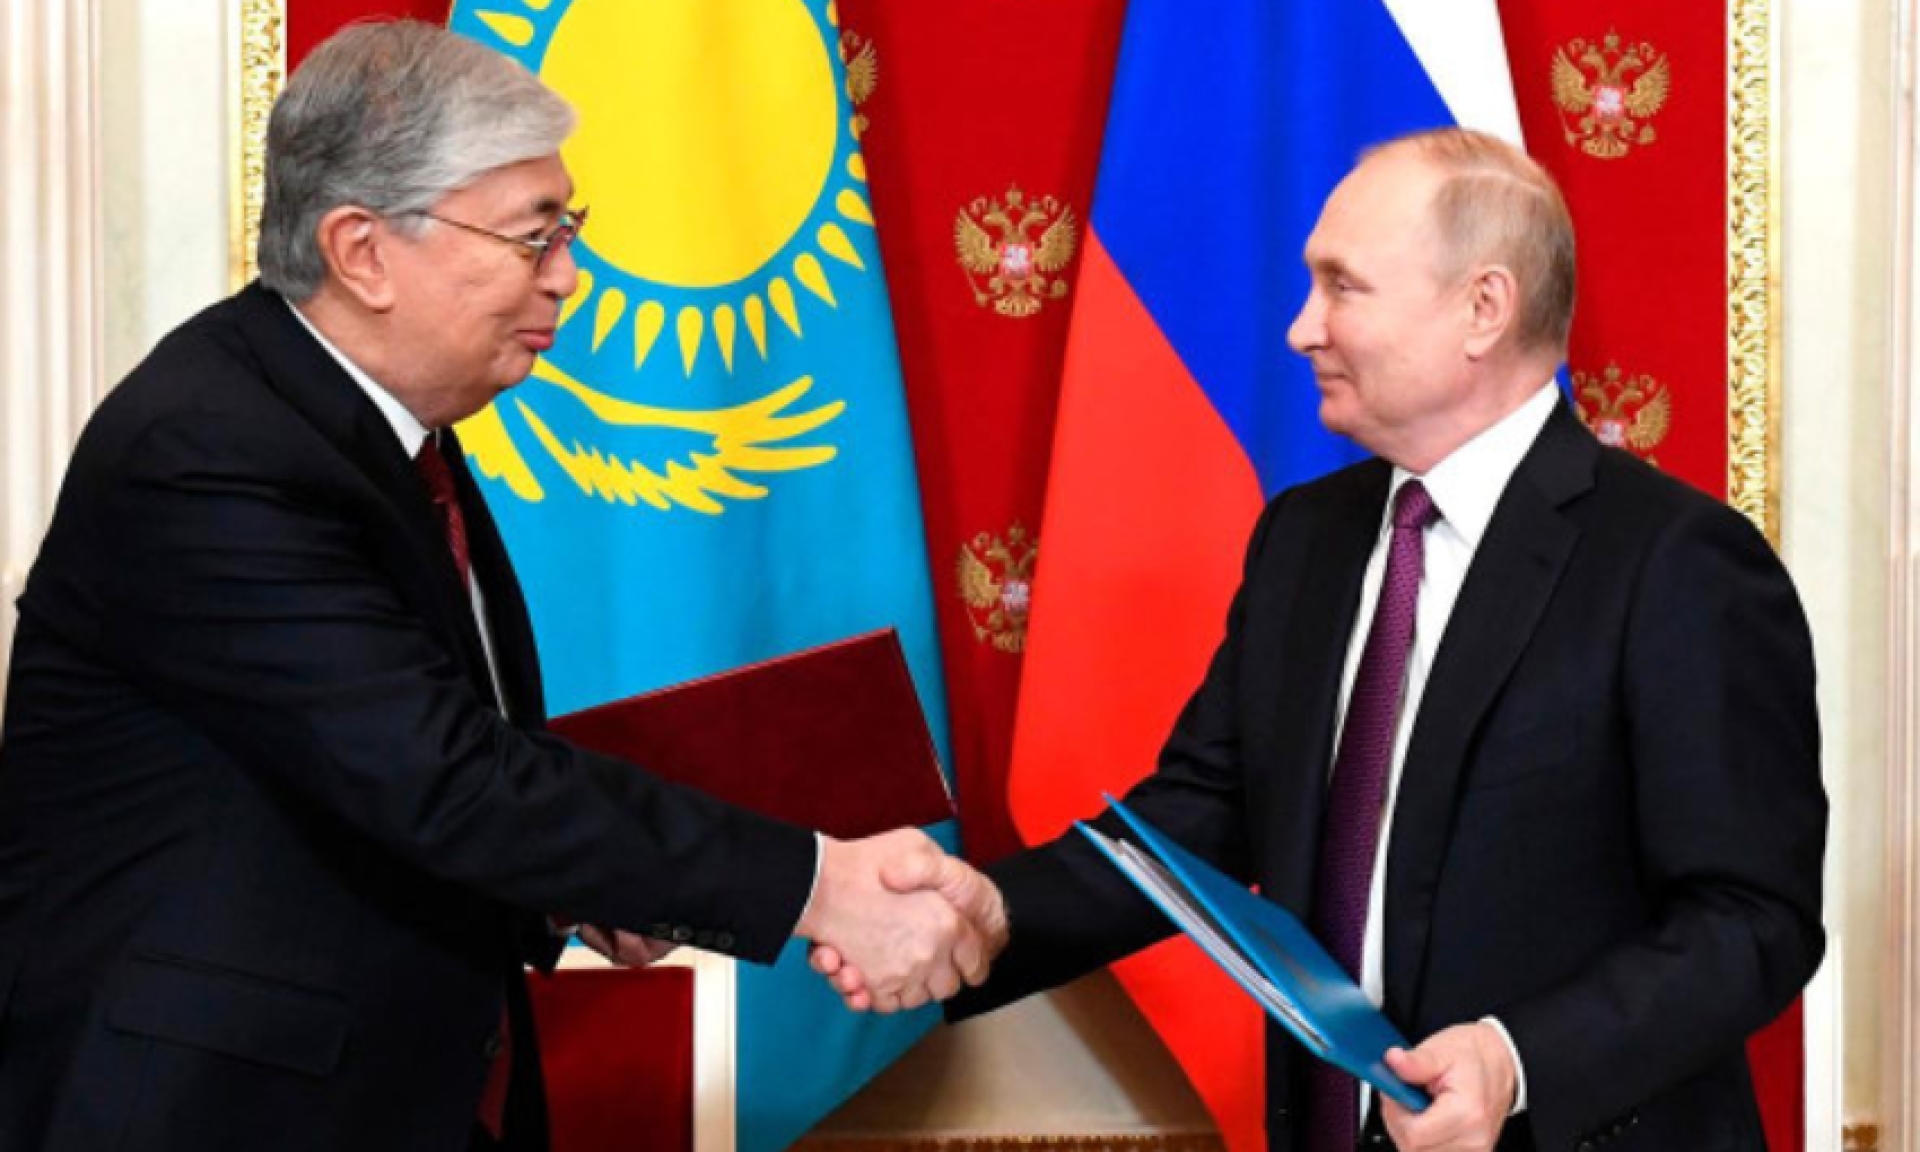 Пресс-секретарь Токаева: Путин и Токаев обсуждали создание "тройственного газового союза"